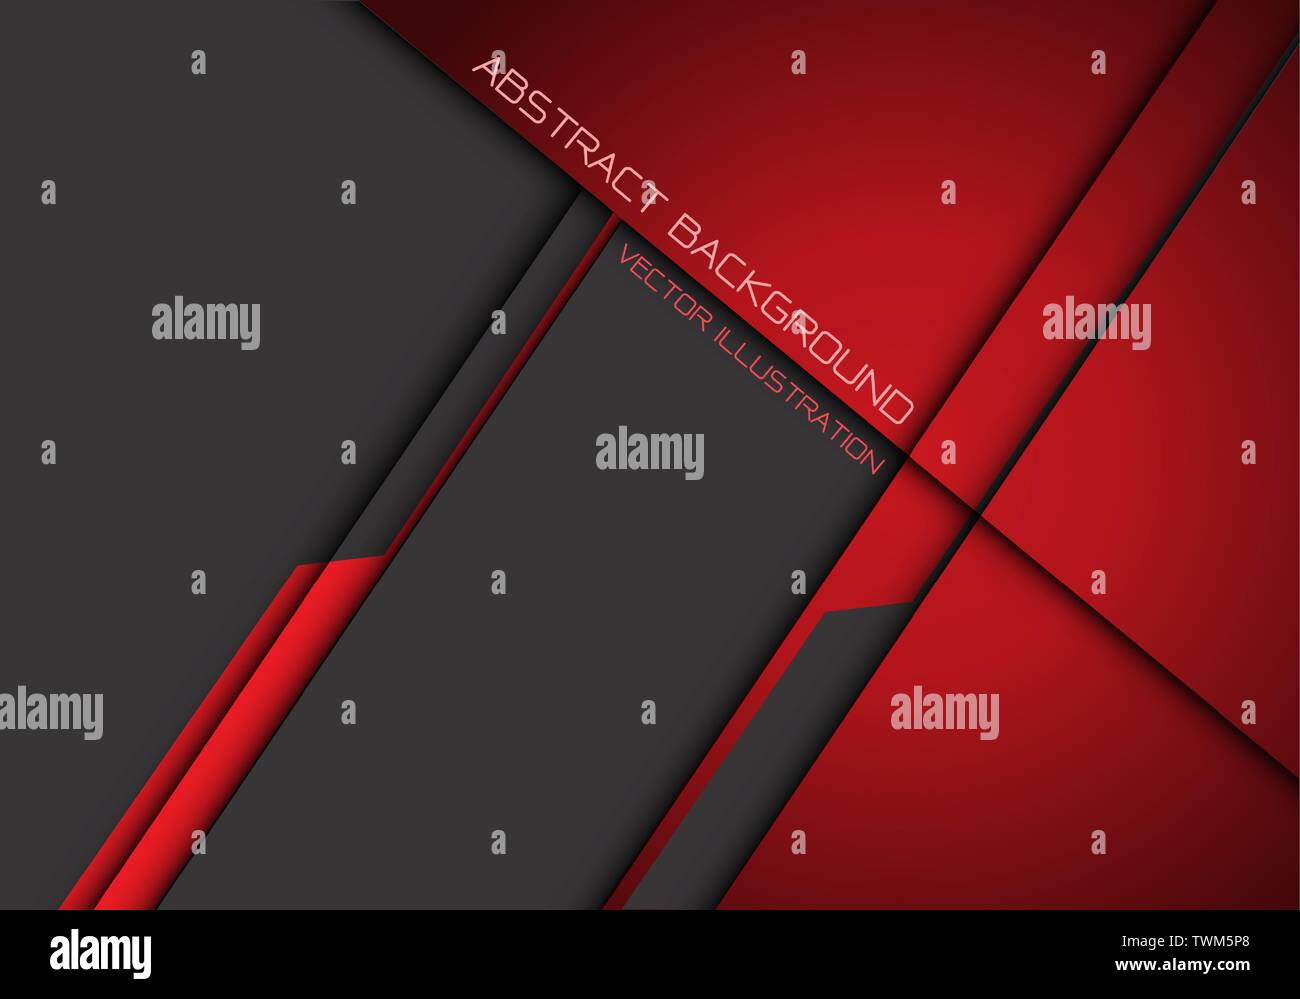 Résumé rouge foncé métallisé gris moderne design chevauchement futuristic background vector illustration. Illustration de Vecteur